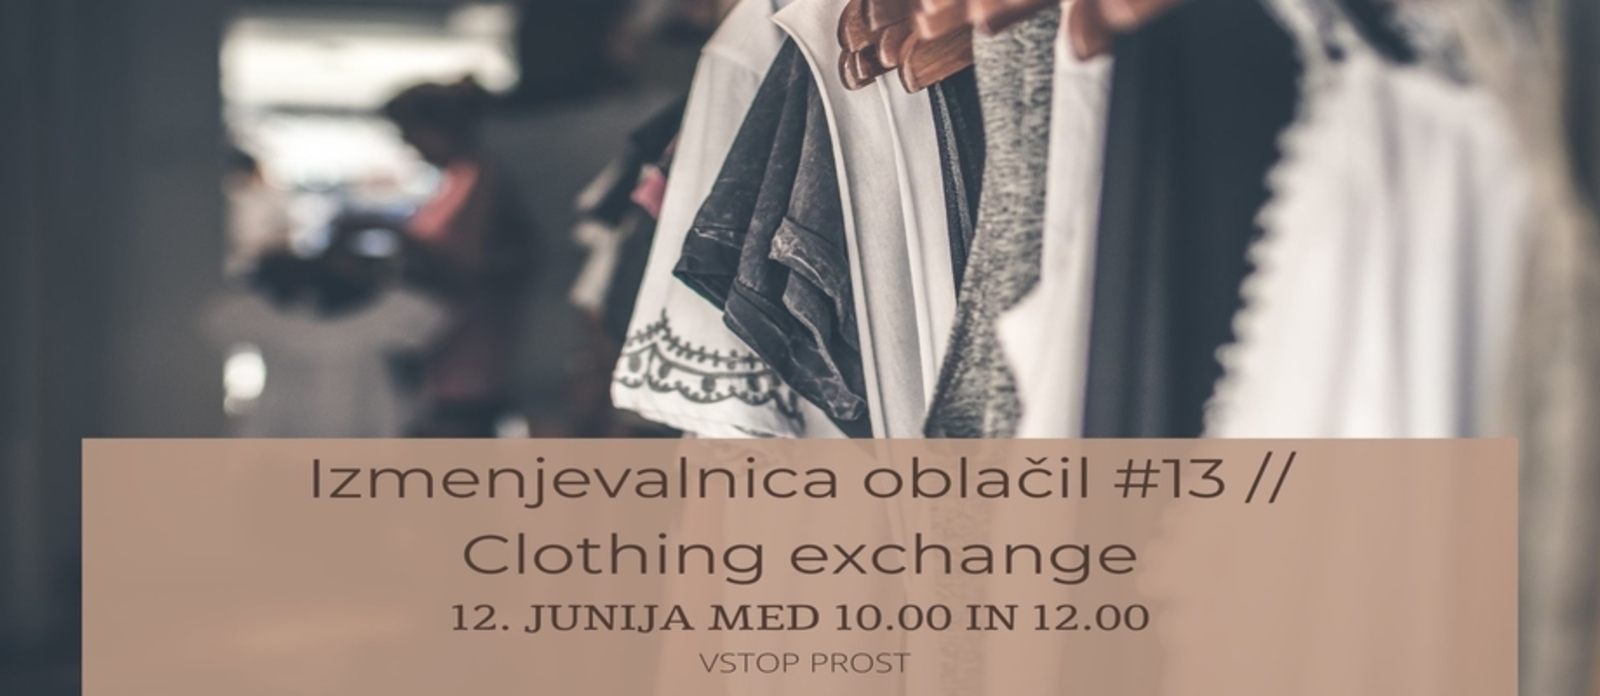 Izmenjevalnica oblačil #13 // Clothing exchange